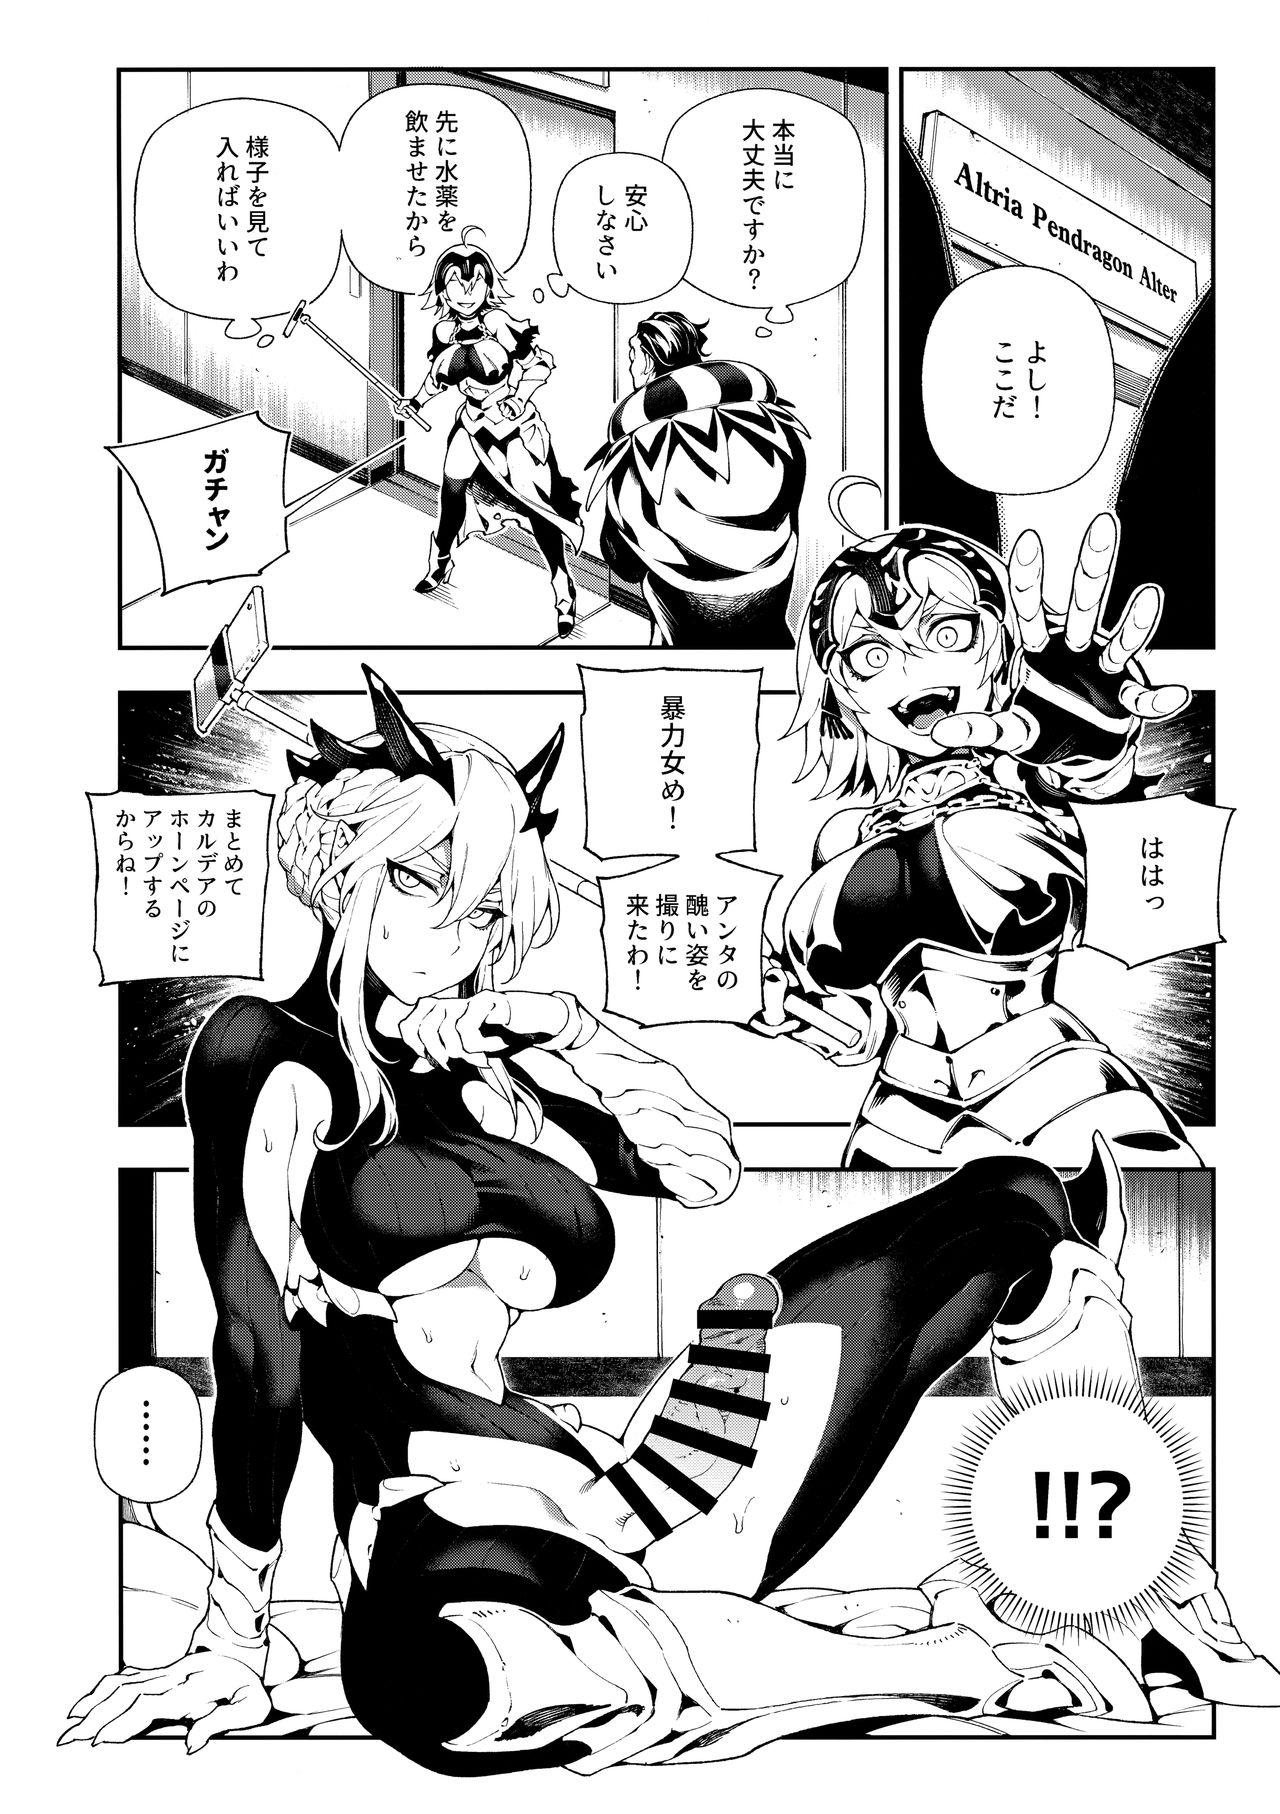 Cogida CHALDEA MANIA - Jeanne Alter - Fate grand order Submissive - Page 5